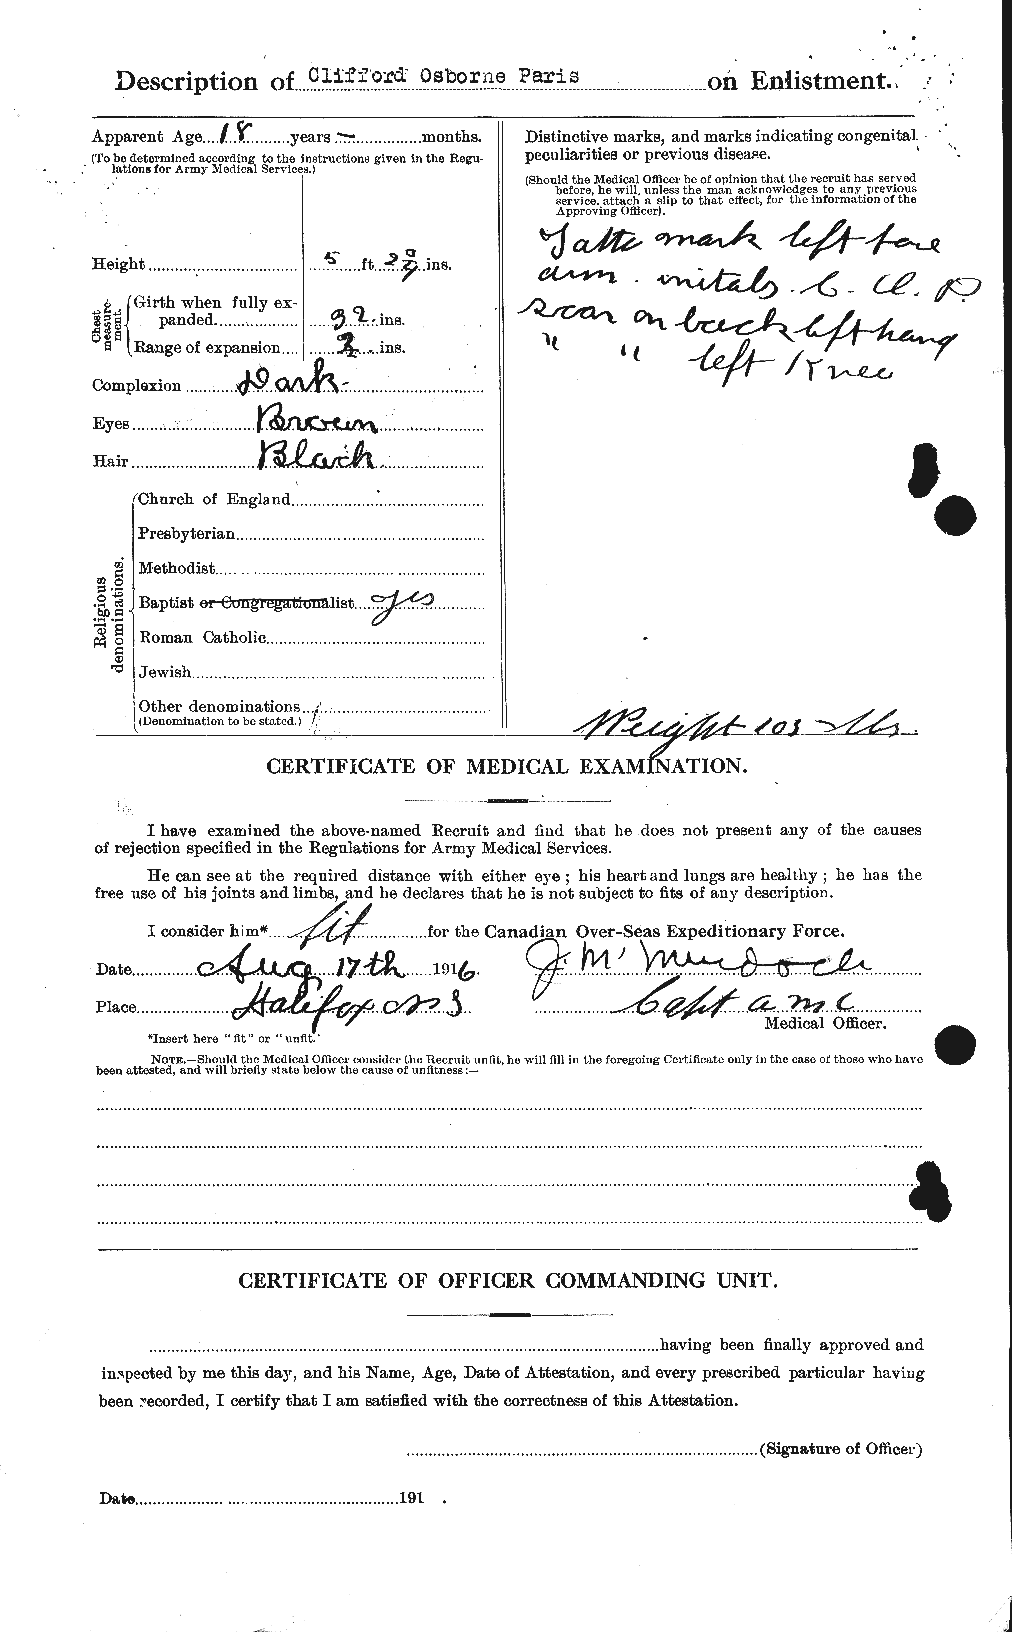 Dossiers du Personnel de la Première Guerre mondiale - CEC 564613b